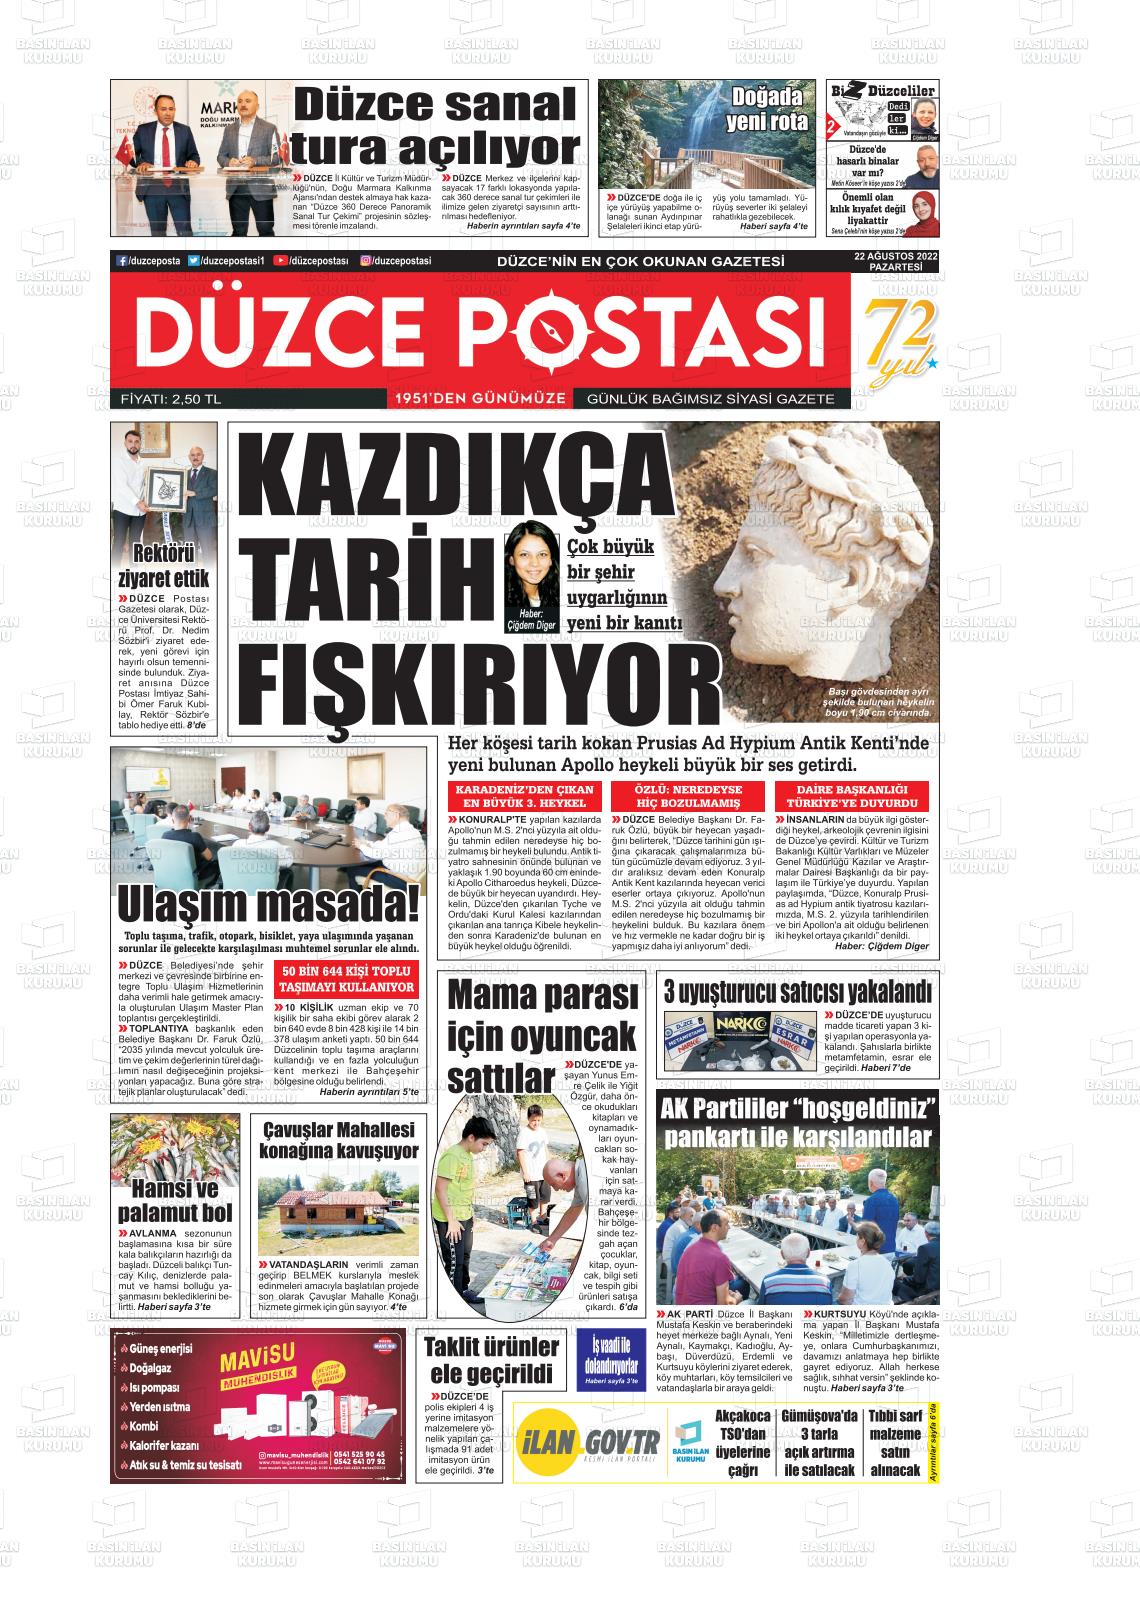 22 Ağustos 2022 Düzce Postası Gazete Manşeti